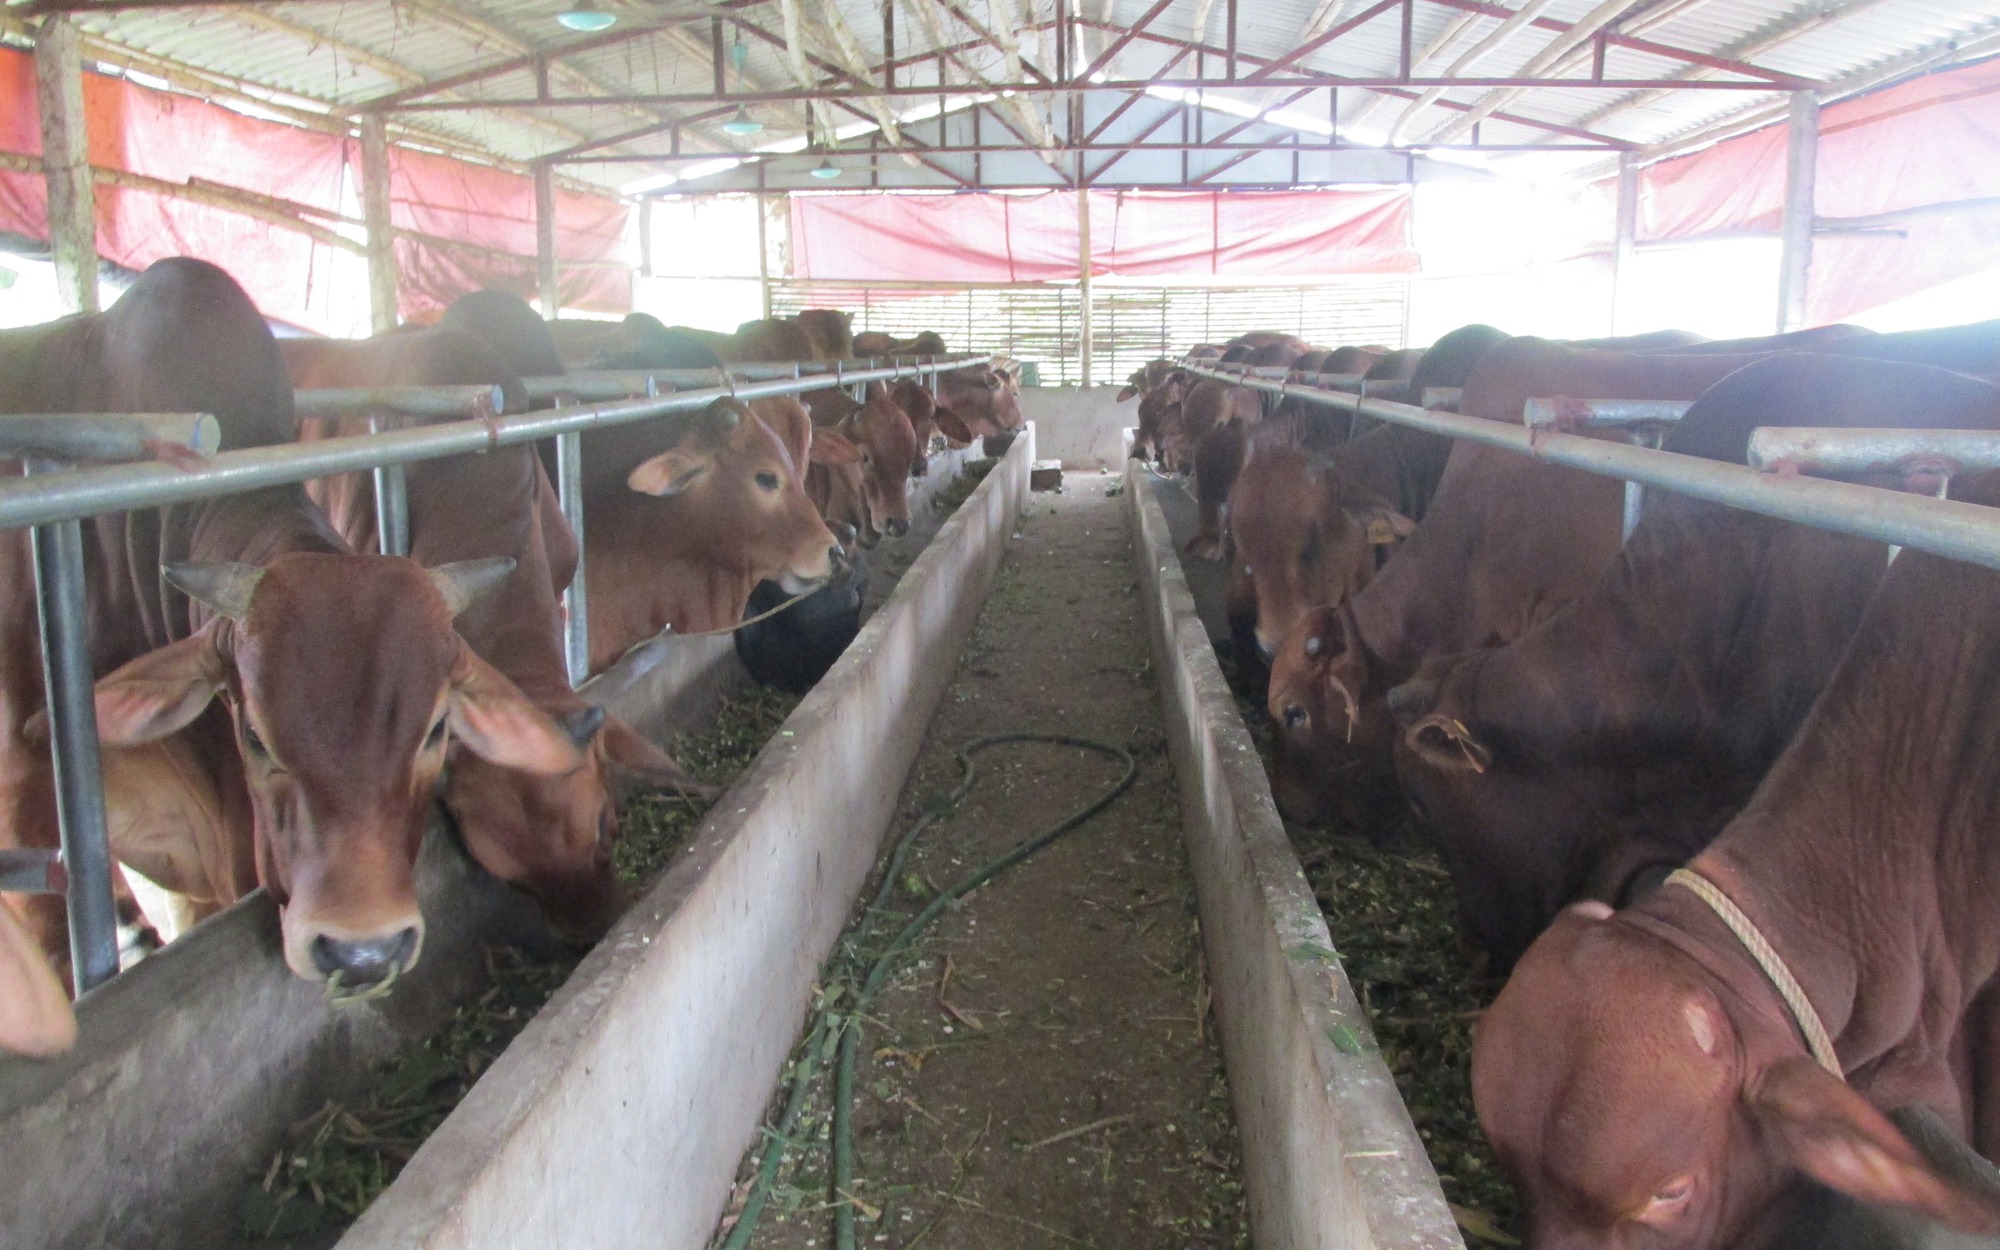 Trang trại “khủng” nuôi trâu bò của lão nông Hà Nội, chỉ cần nghe tiếng ho cũng biết bò bị bệnh gì - Ảnh 1.